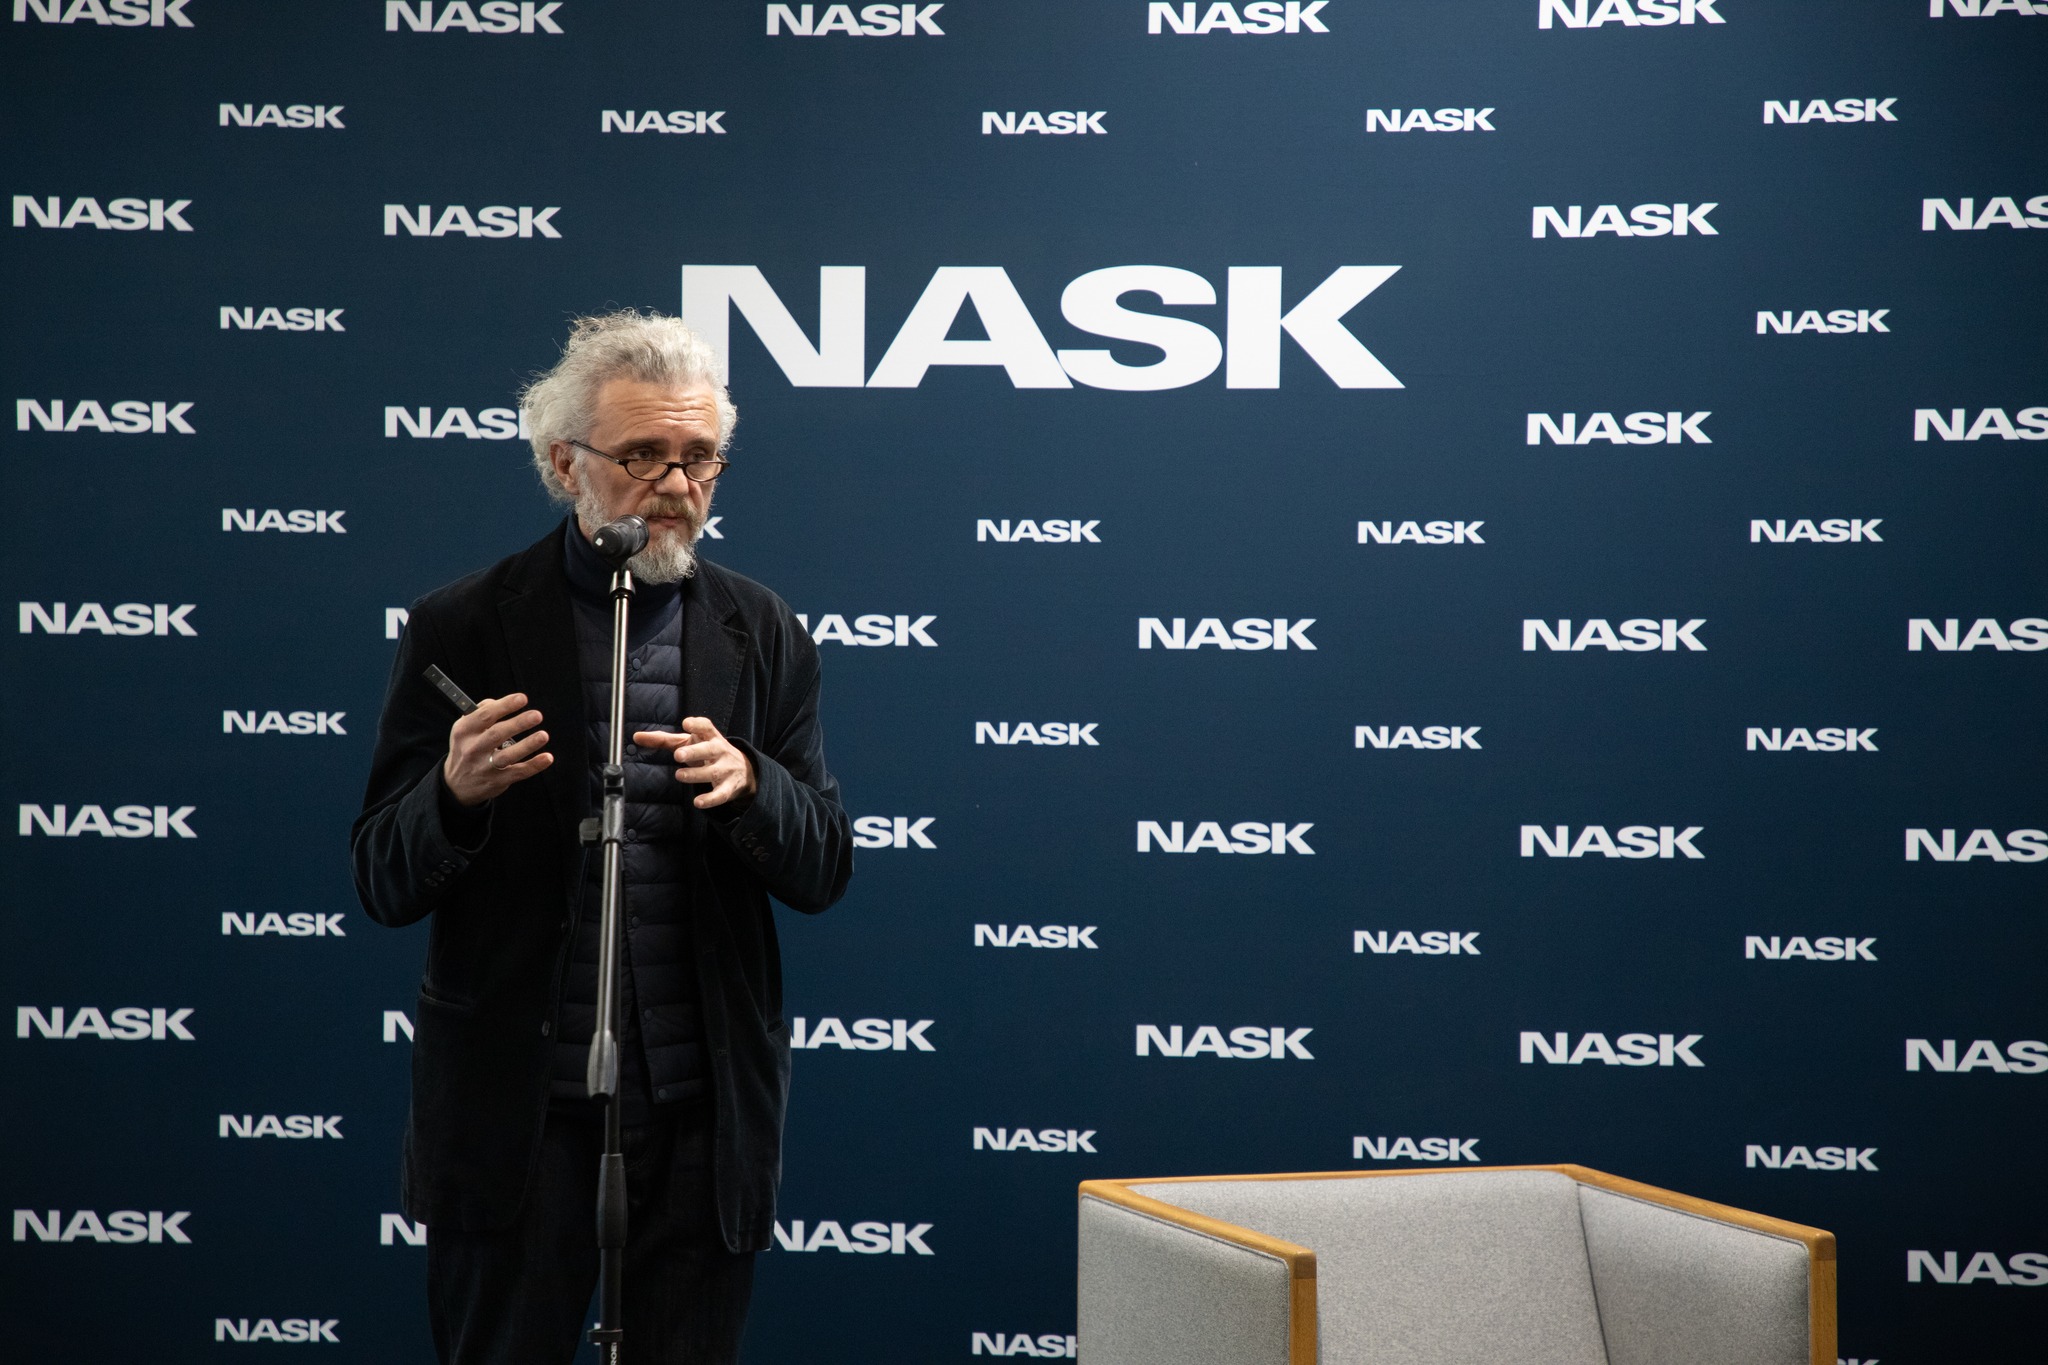 Starszy mężczyzna przemawia do mikrofonu przed tłem z logo NASK.